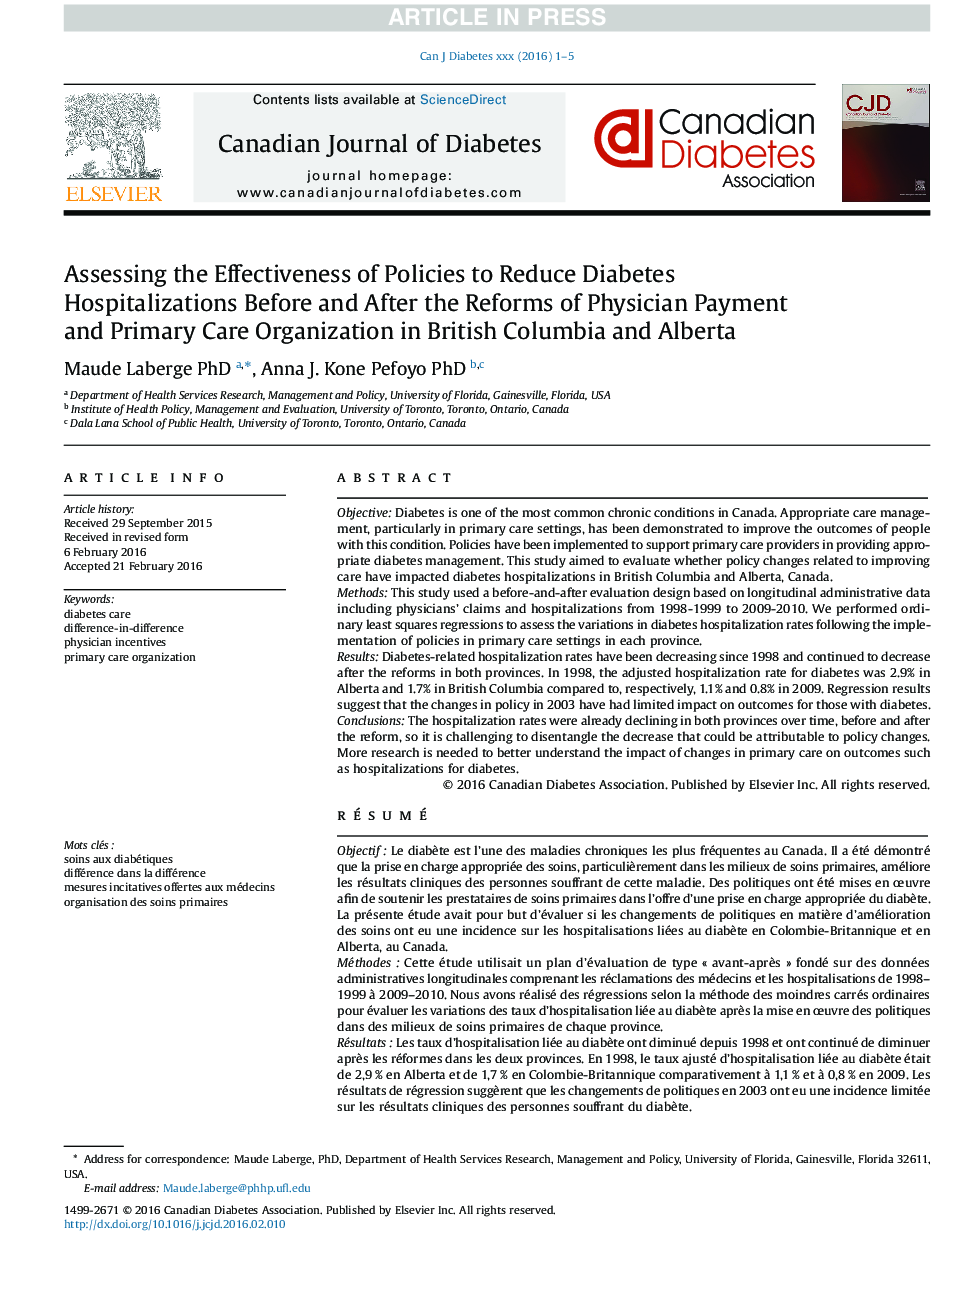 ارزیابی اثربخشی سیاست های کاهش بیمارستان های دیابت قبل و بعد از اصلاحات پرداخت و انجام مراقبت های اولیه توسط پزشکان در بریتیش کلمبیا و آلبرتا 